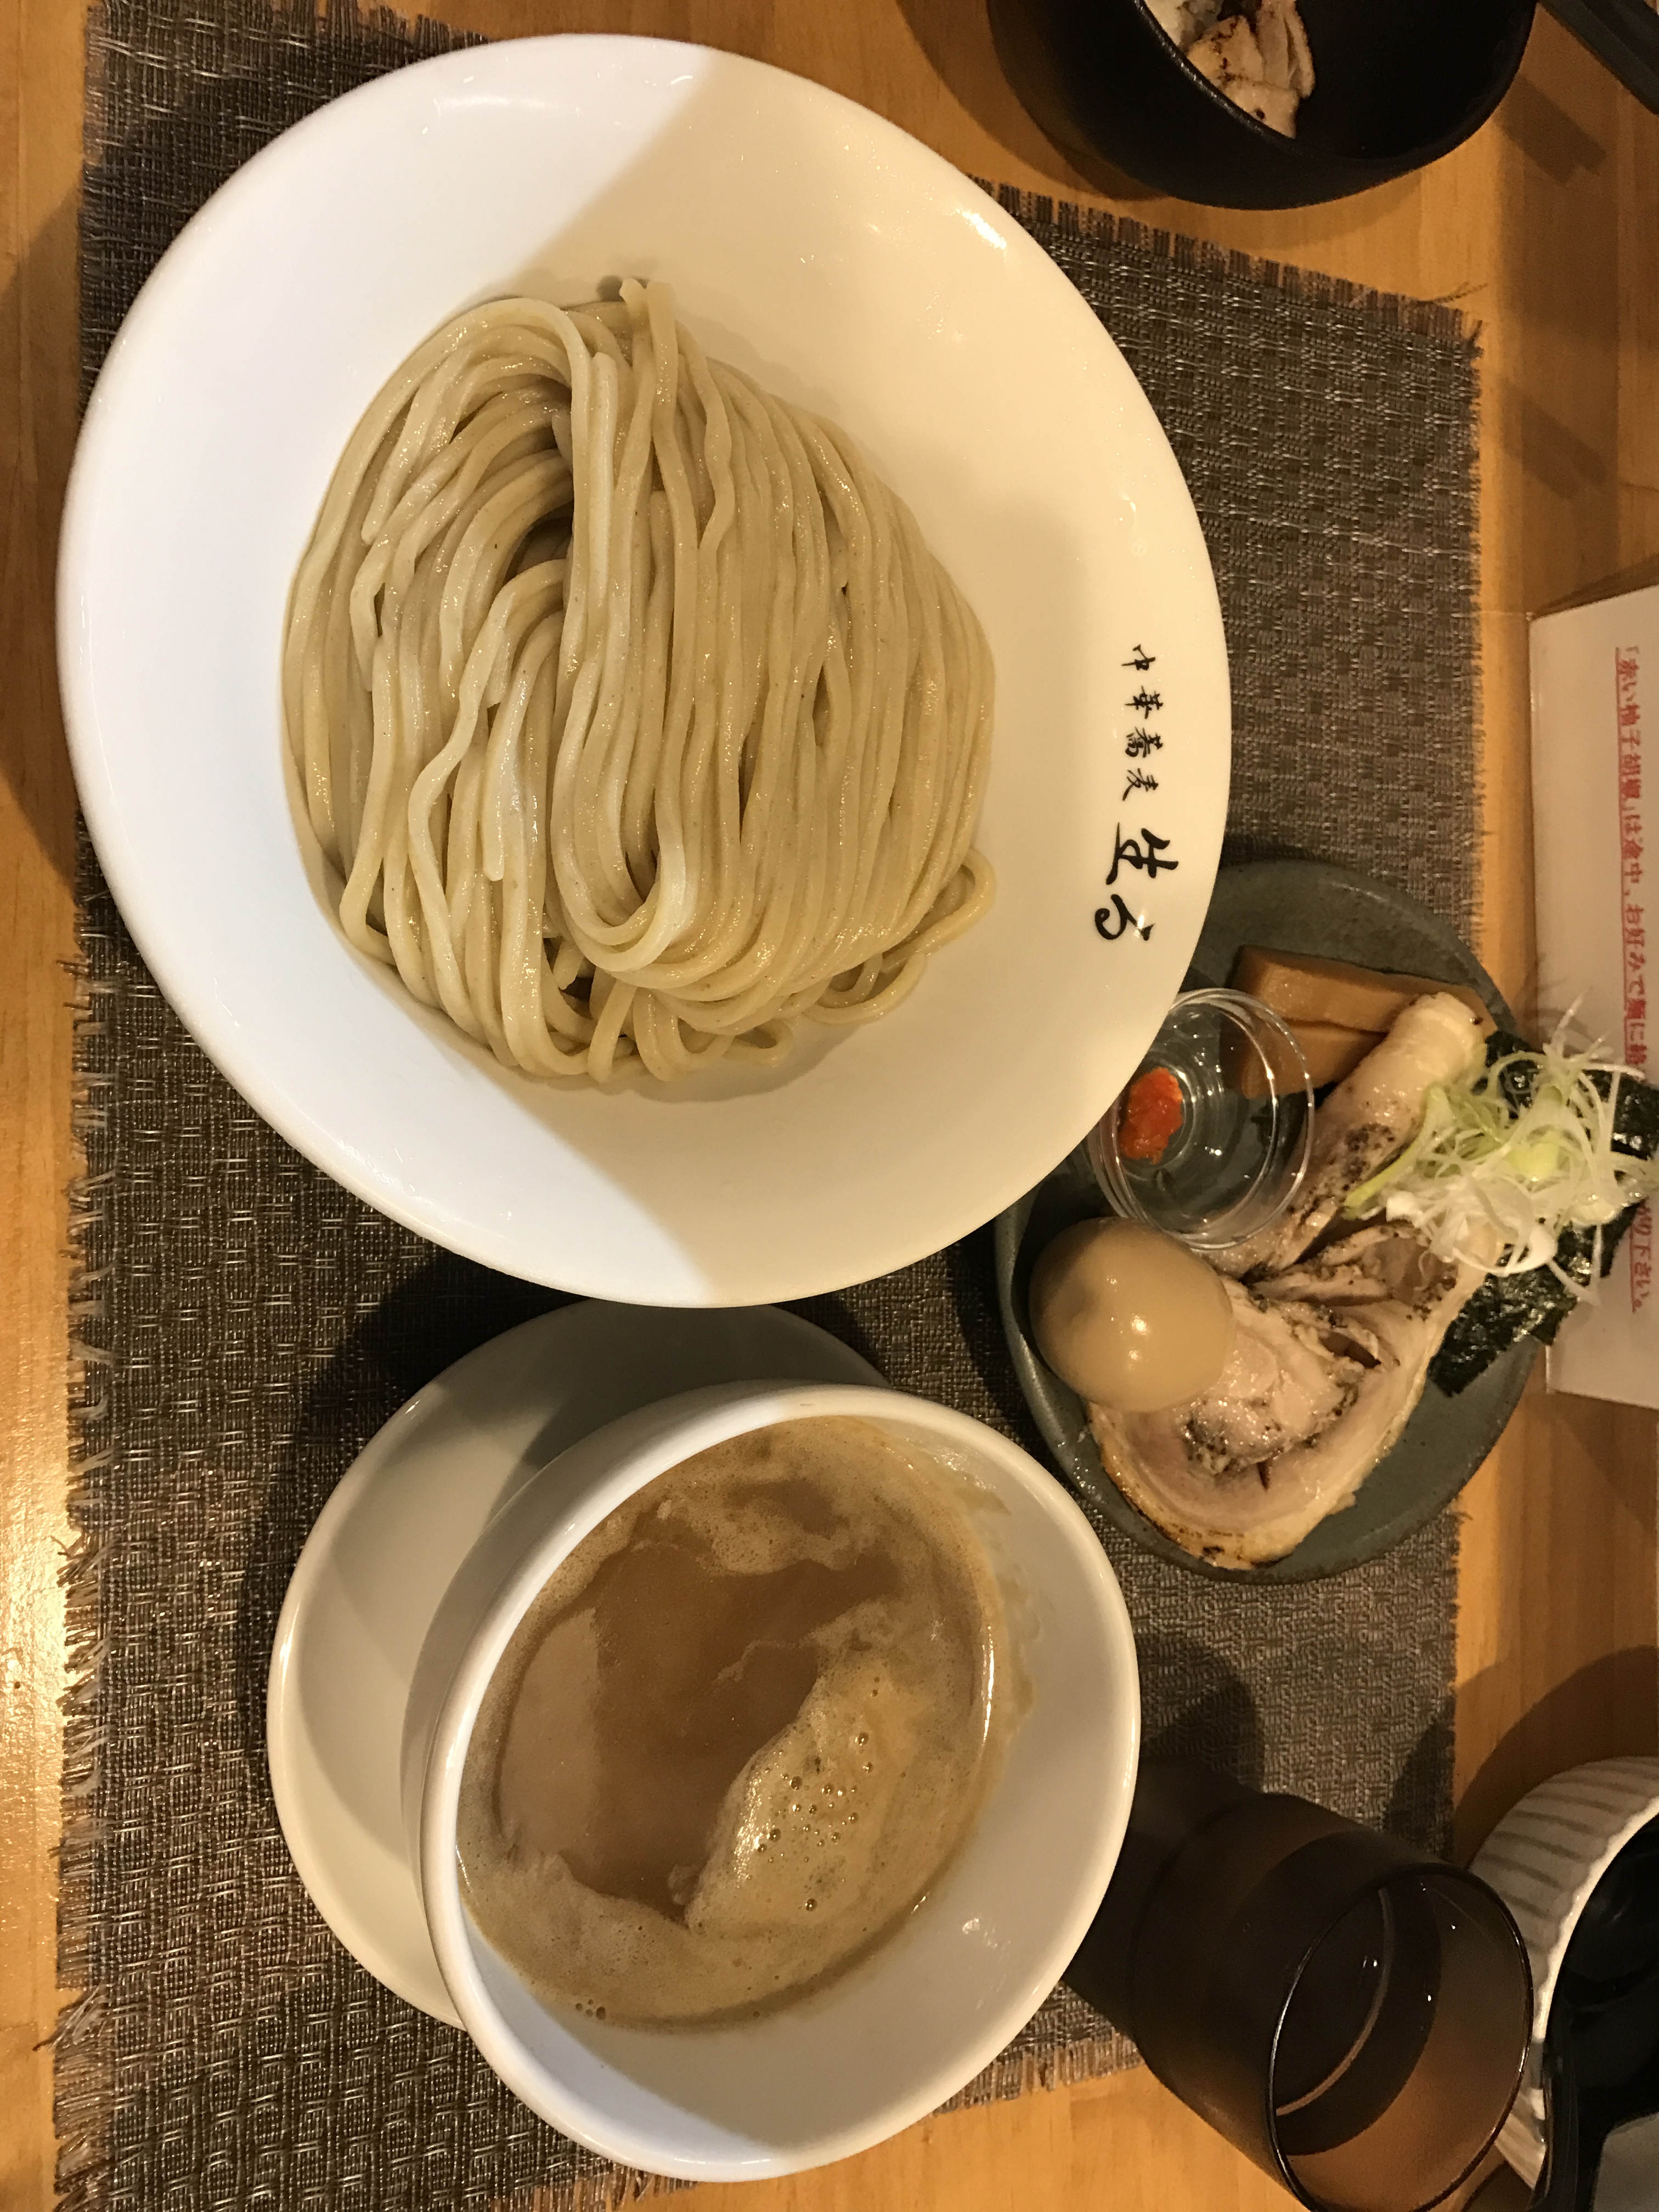 名古屋市ベスト30 超厳選した人気のラーメンつけ麺まぜそば屋ランキング 日常に潤いをもたらす 知って得する情報デリバリー